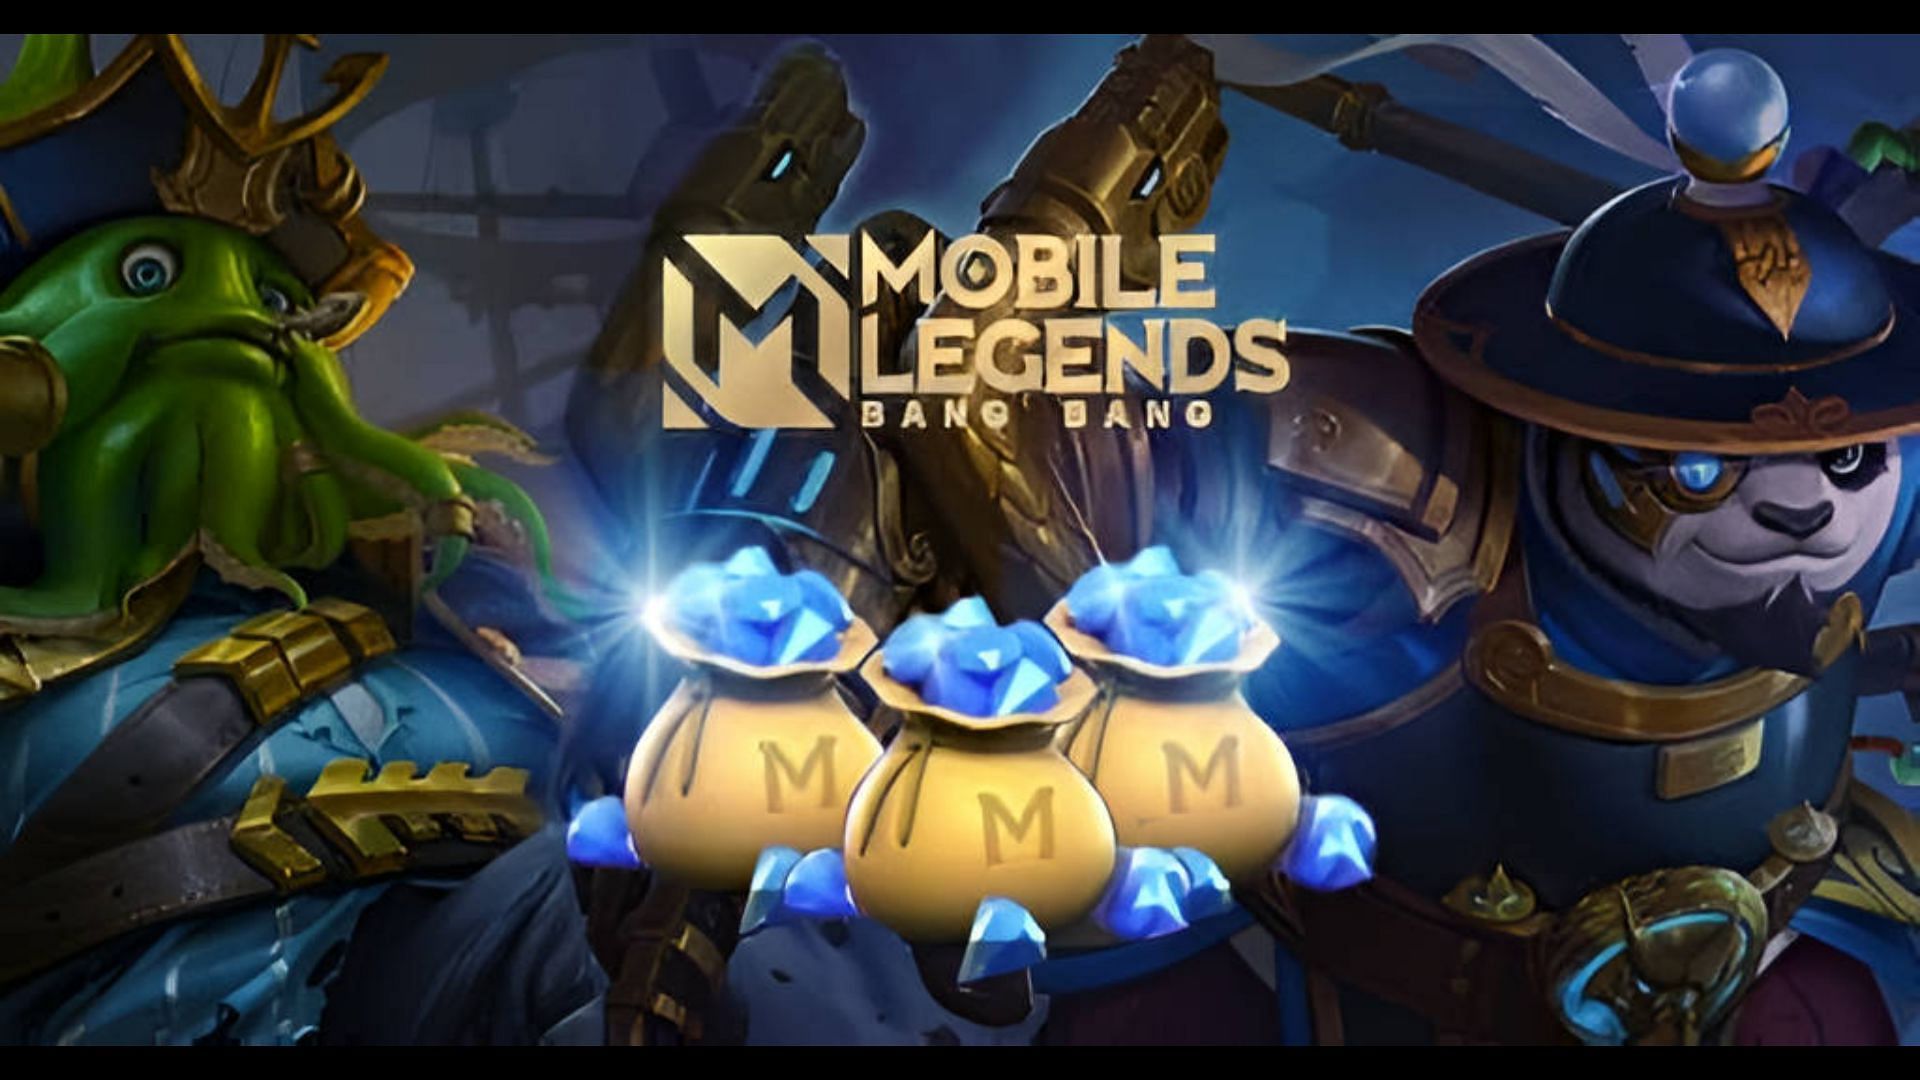 Mobile Legend Free DIAS